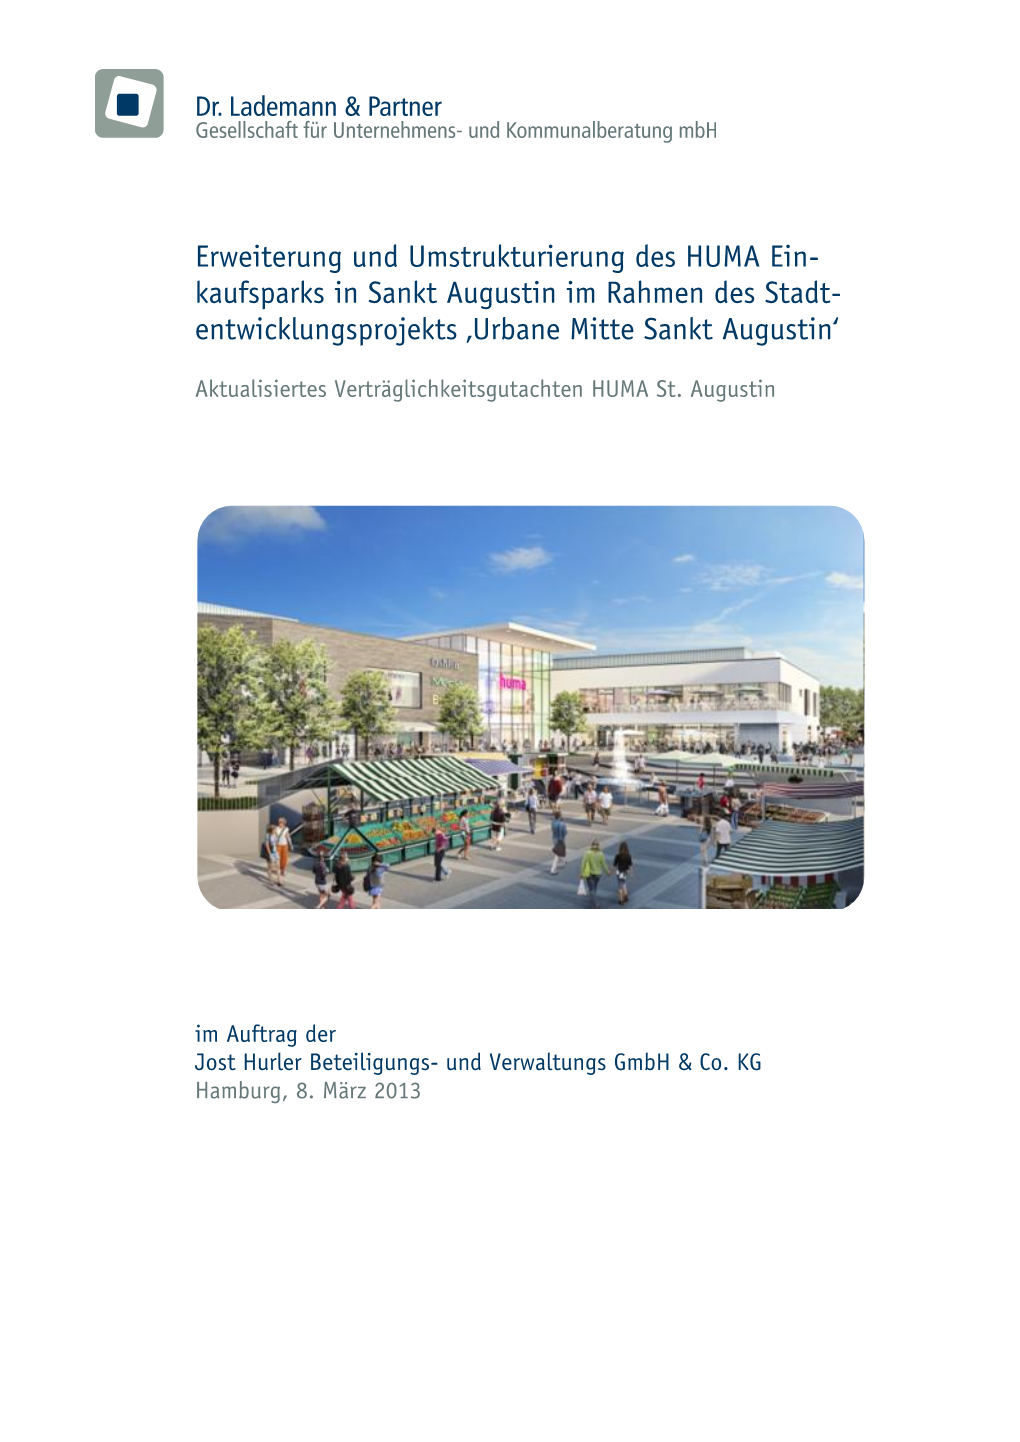 Erweiterung Und Umstrukturierung Des HUMA Ein- Kaufsparks in Sankt Augustin Im Rahmen Des Stadt- Entwicklungsprojekts ‚Urbane Mitte Sankt Augustin‘